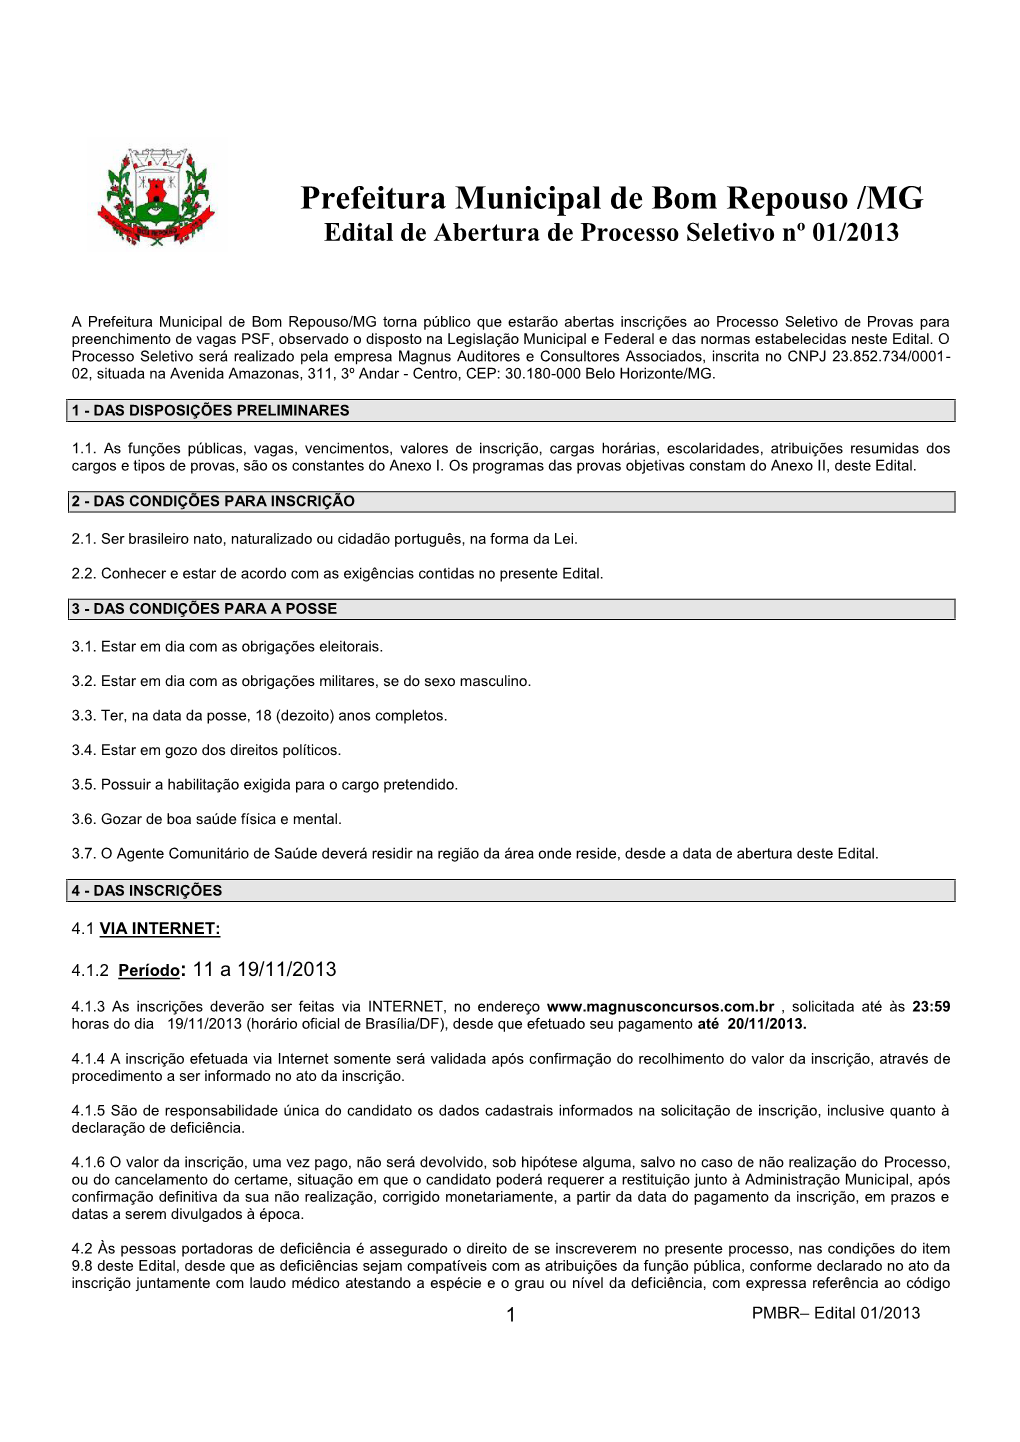 Prefeitura Municipal De Bom Repouso /MG Edital De Abertura De Processo Seletivo Nº 01/2013